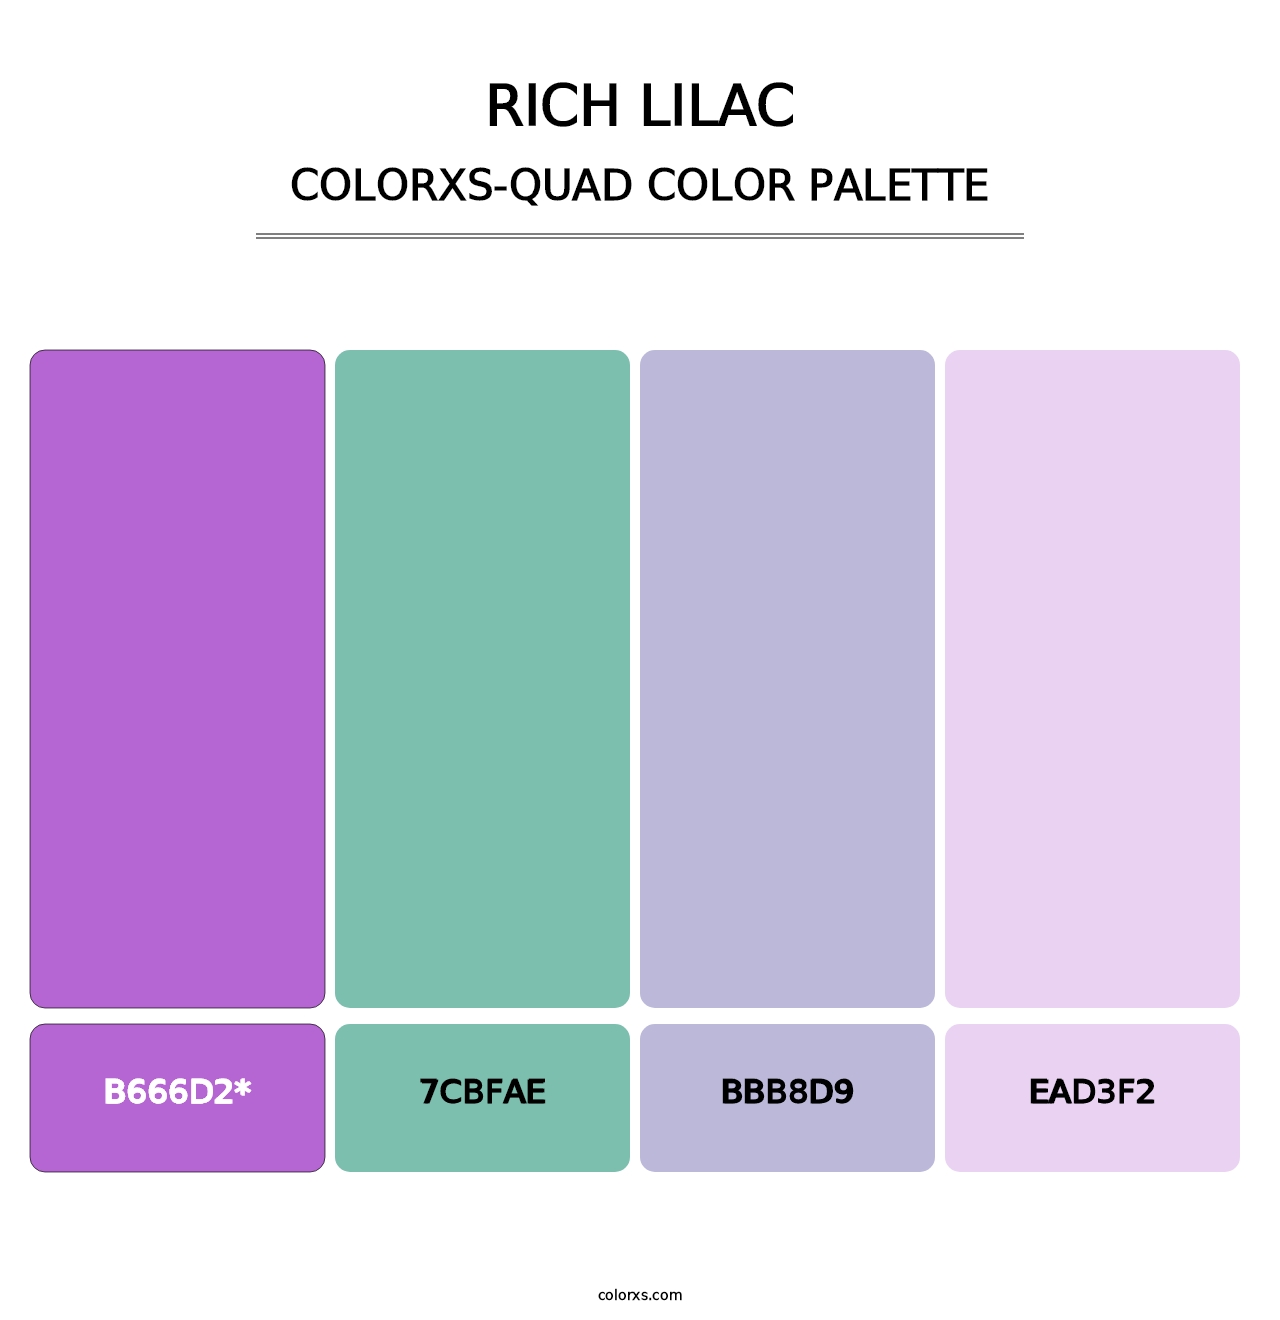 Rich Lilac - Colorxs Quad Palette